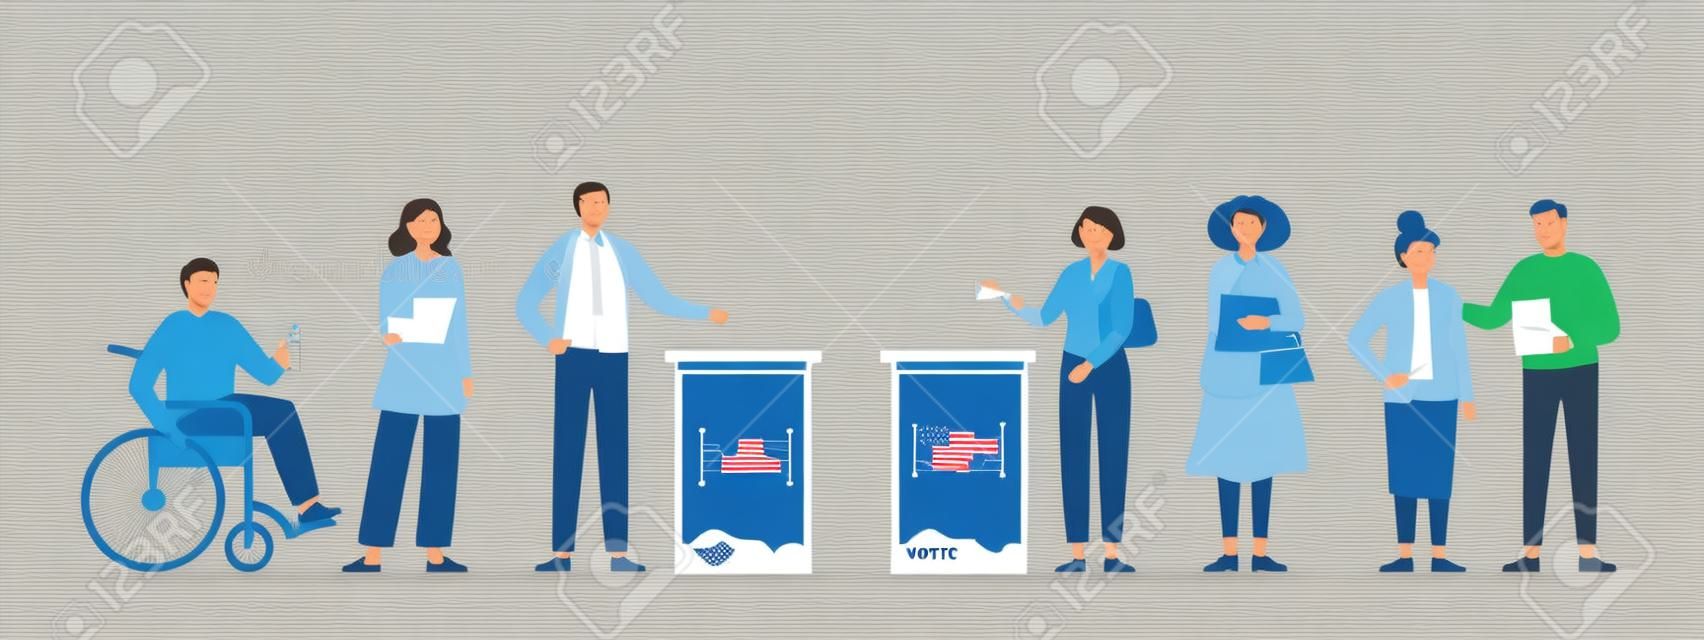 Notion de jour d'élection. Différents électeurs votant au bureau de vote. Des hommes et des femmes déposent des bulletins de vote dans l'urne électorale. Élection démocratique. Illustration vectorielle plate.